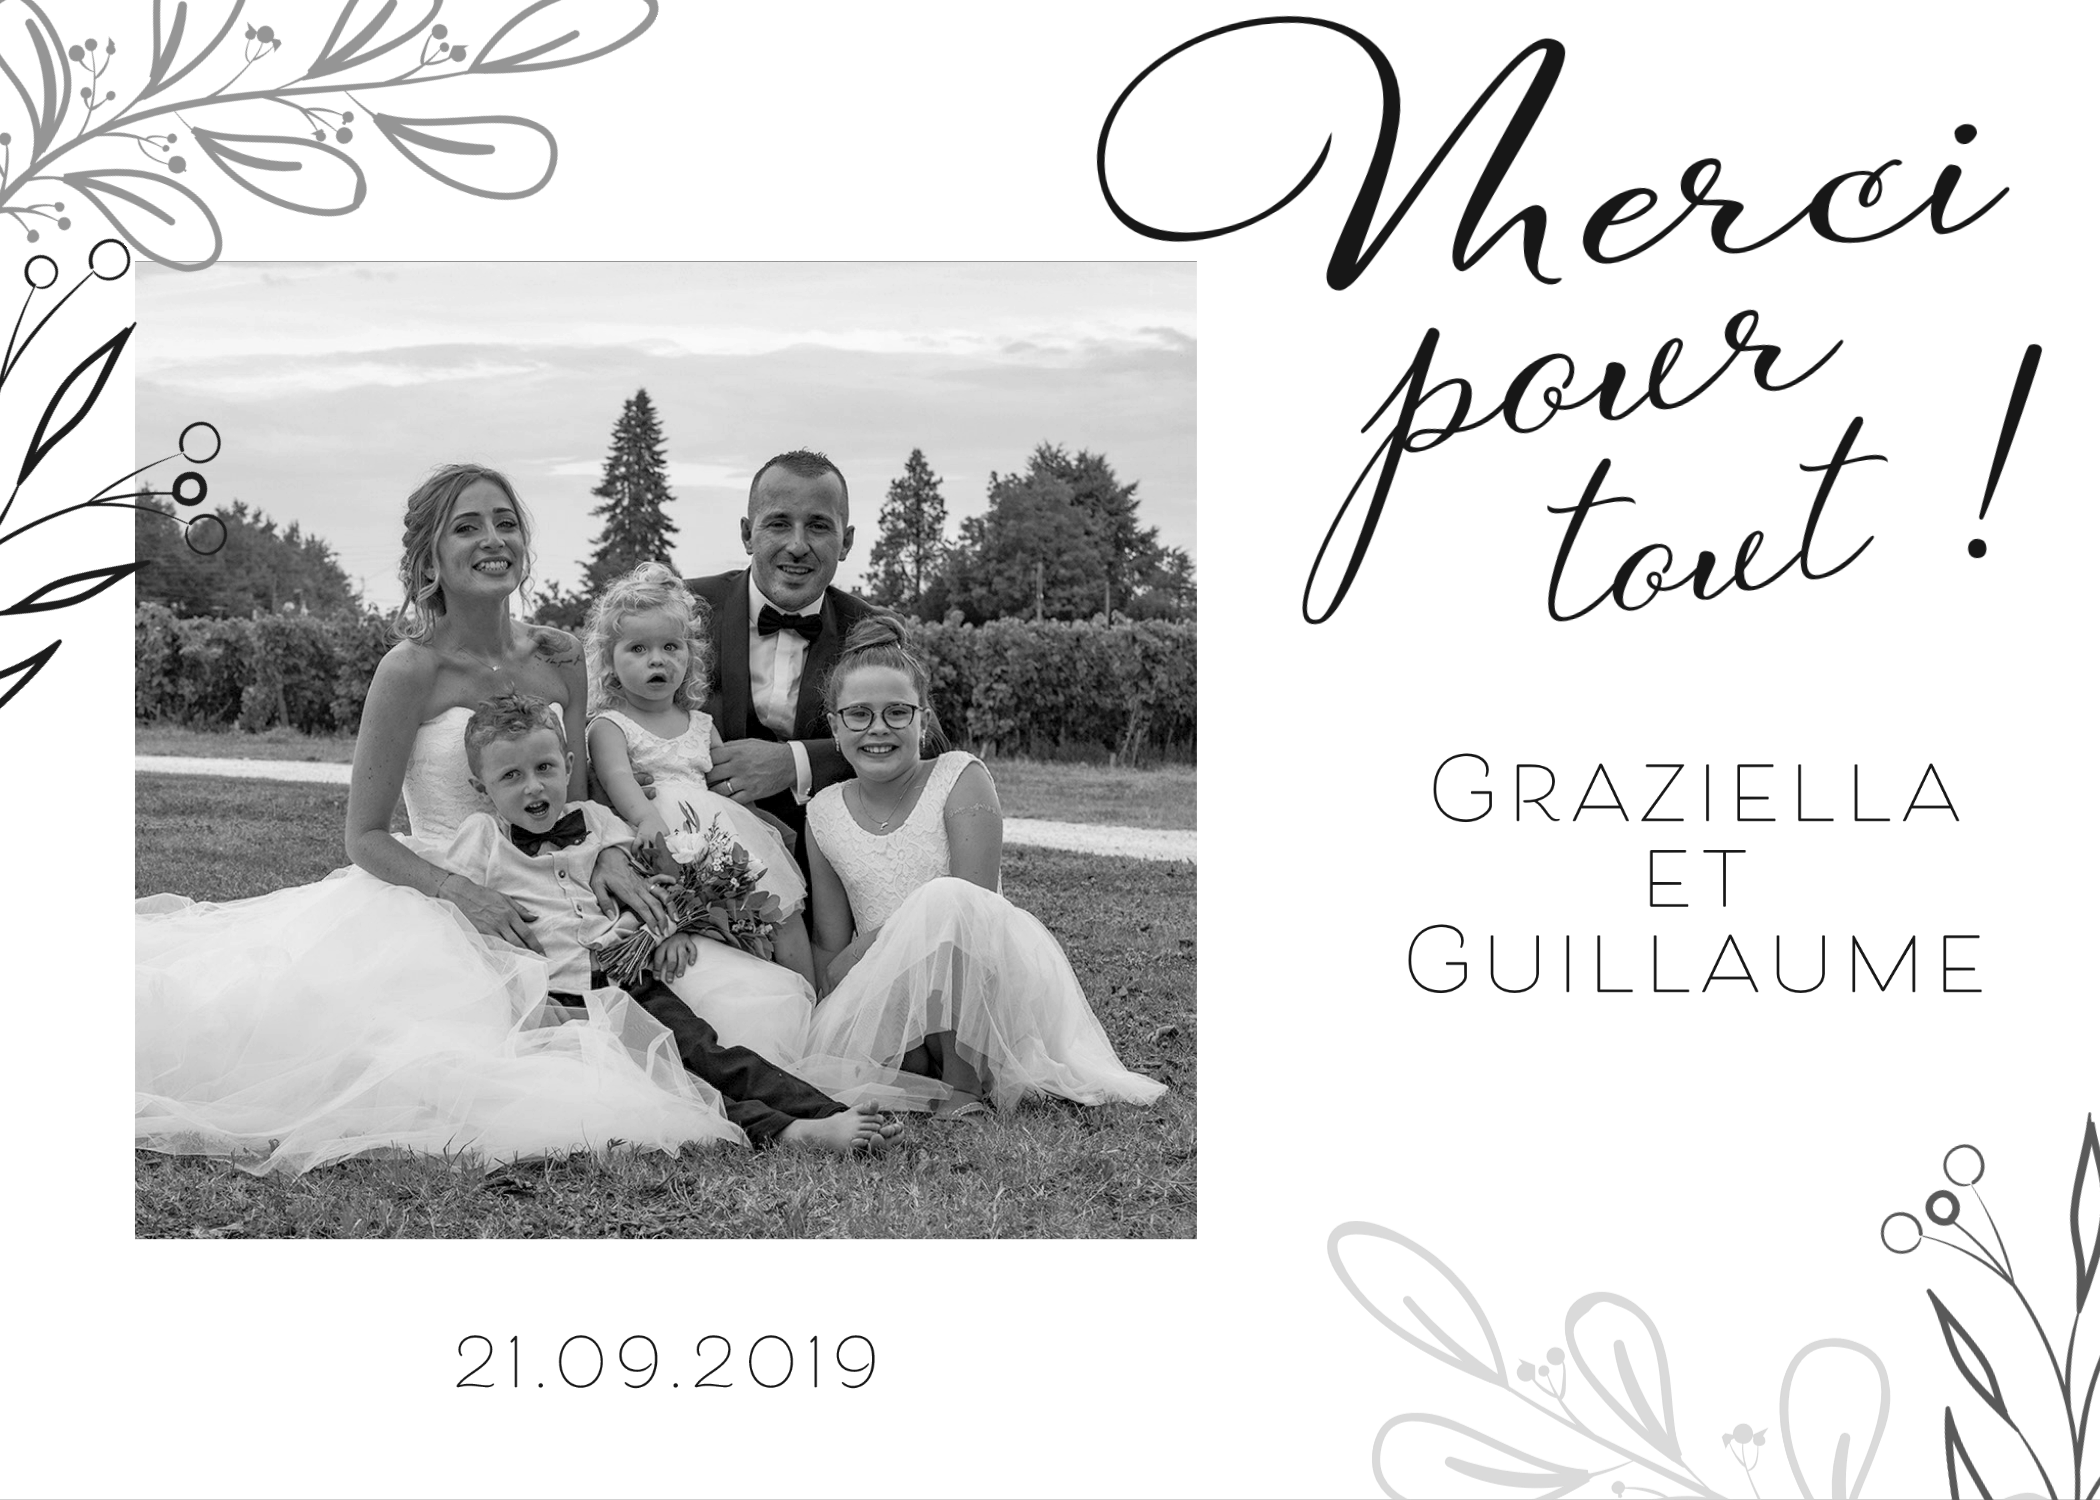 Photographe de mariages en Gironde carte de remerciement des mariés avec une photo des mariés en noir et blanc